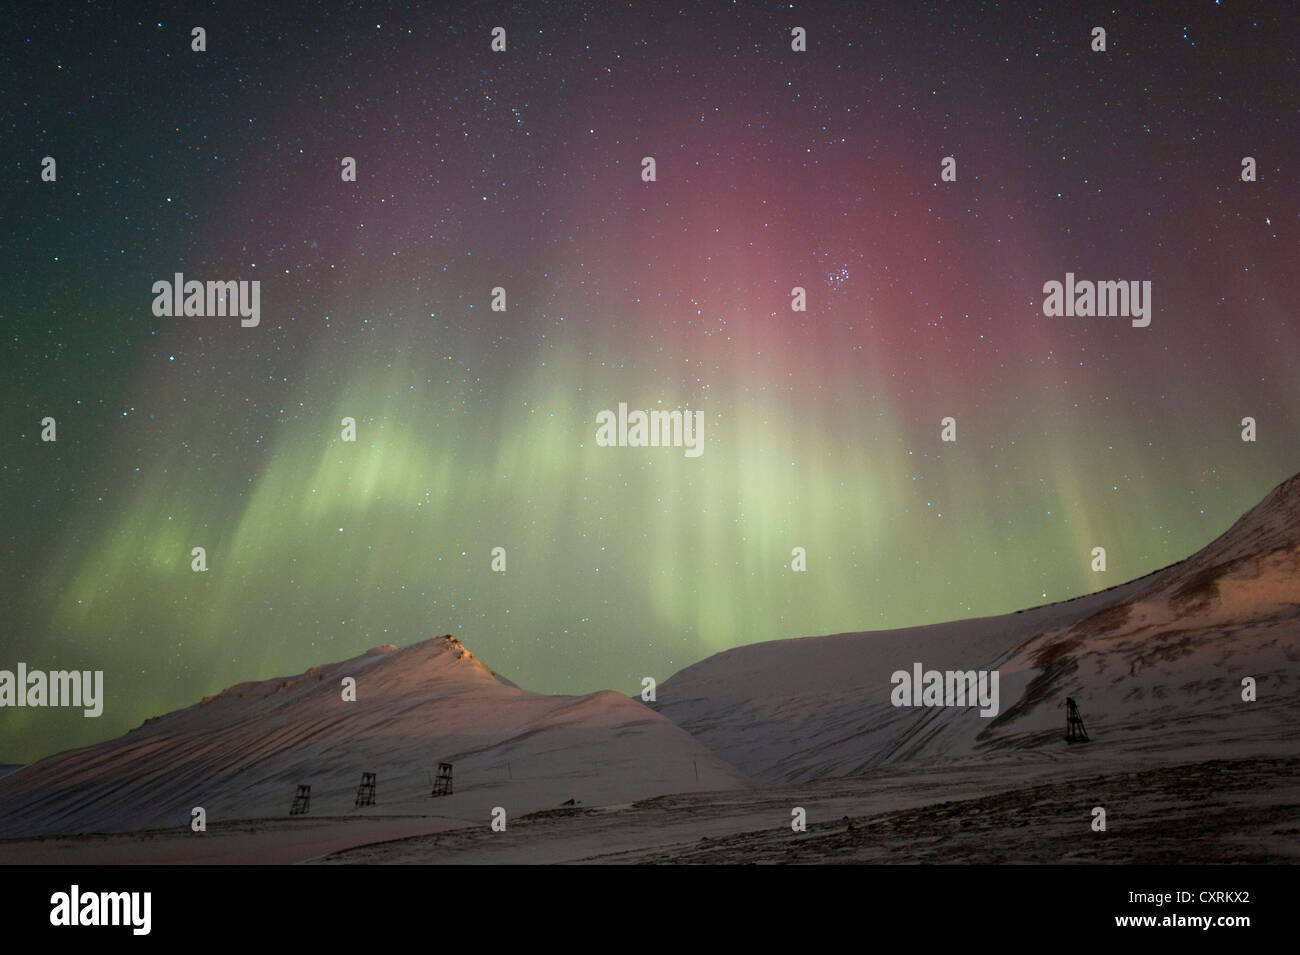 Grünes und rotes Polarlicht, Nordlicht, Aurora Borealis über eine verschneite Landschaft, Landschaft mit beleuchteten Stockfoto